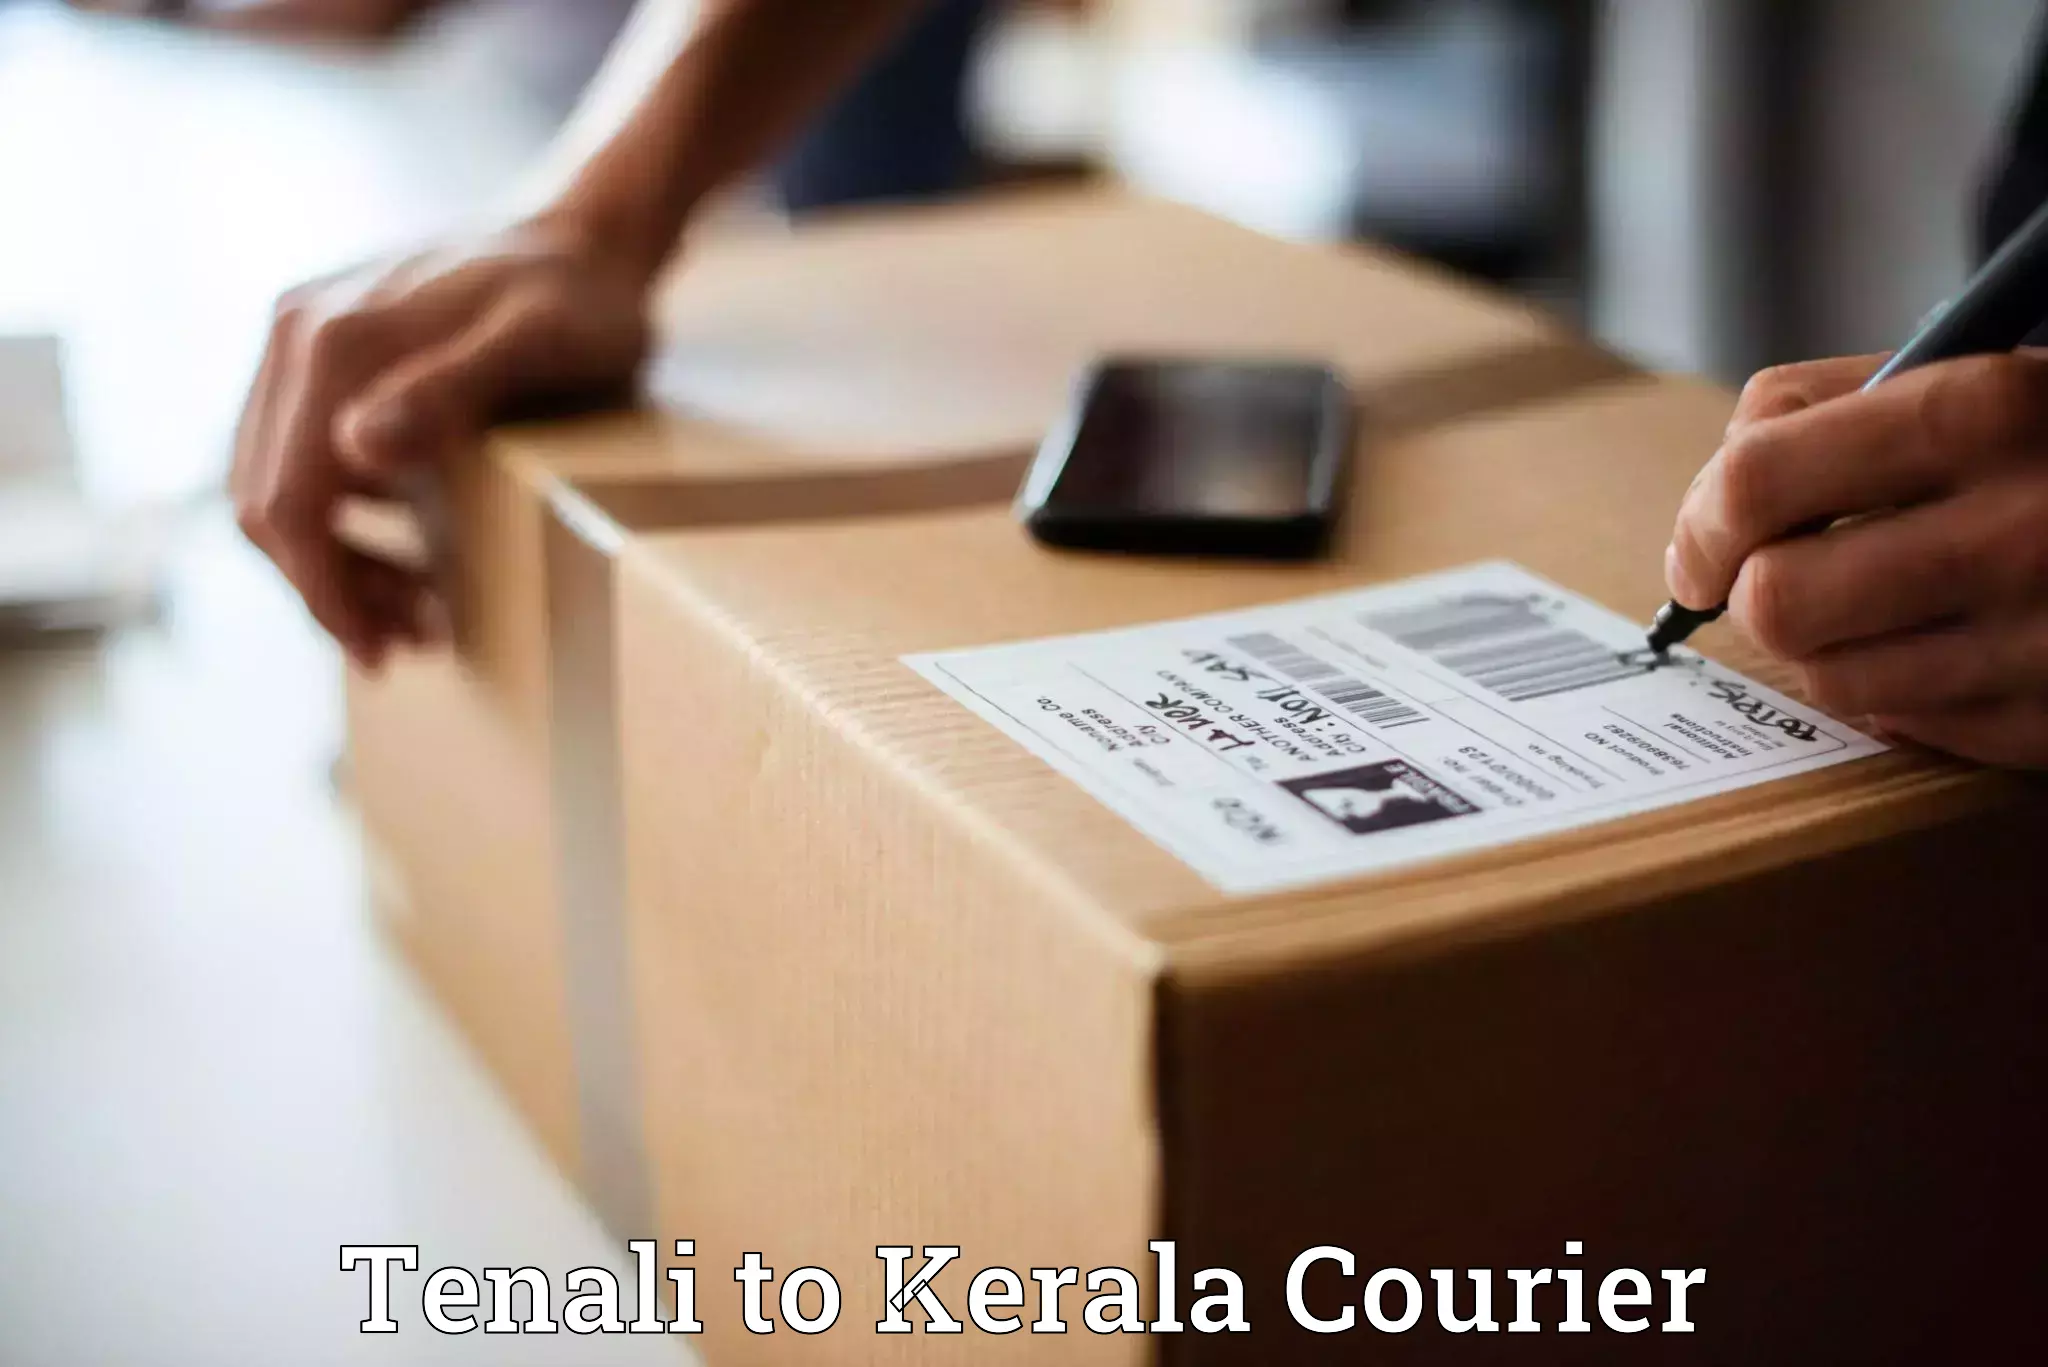 Express courier capabilities Tenali to Kerala